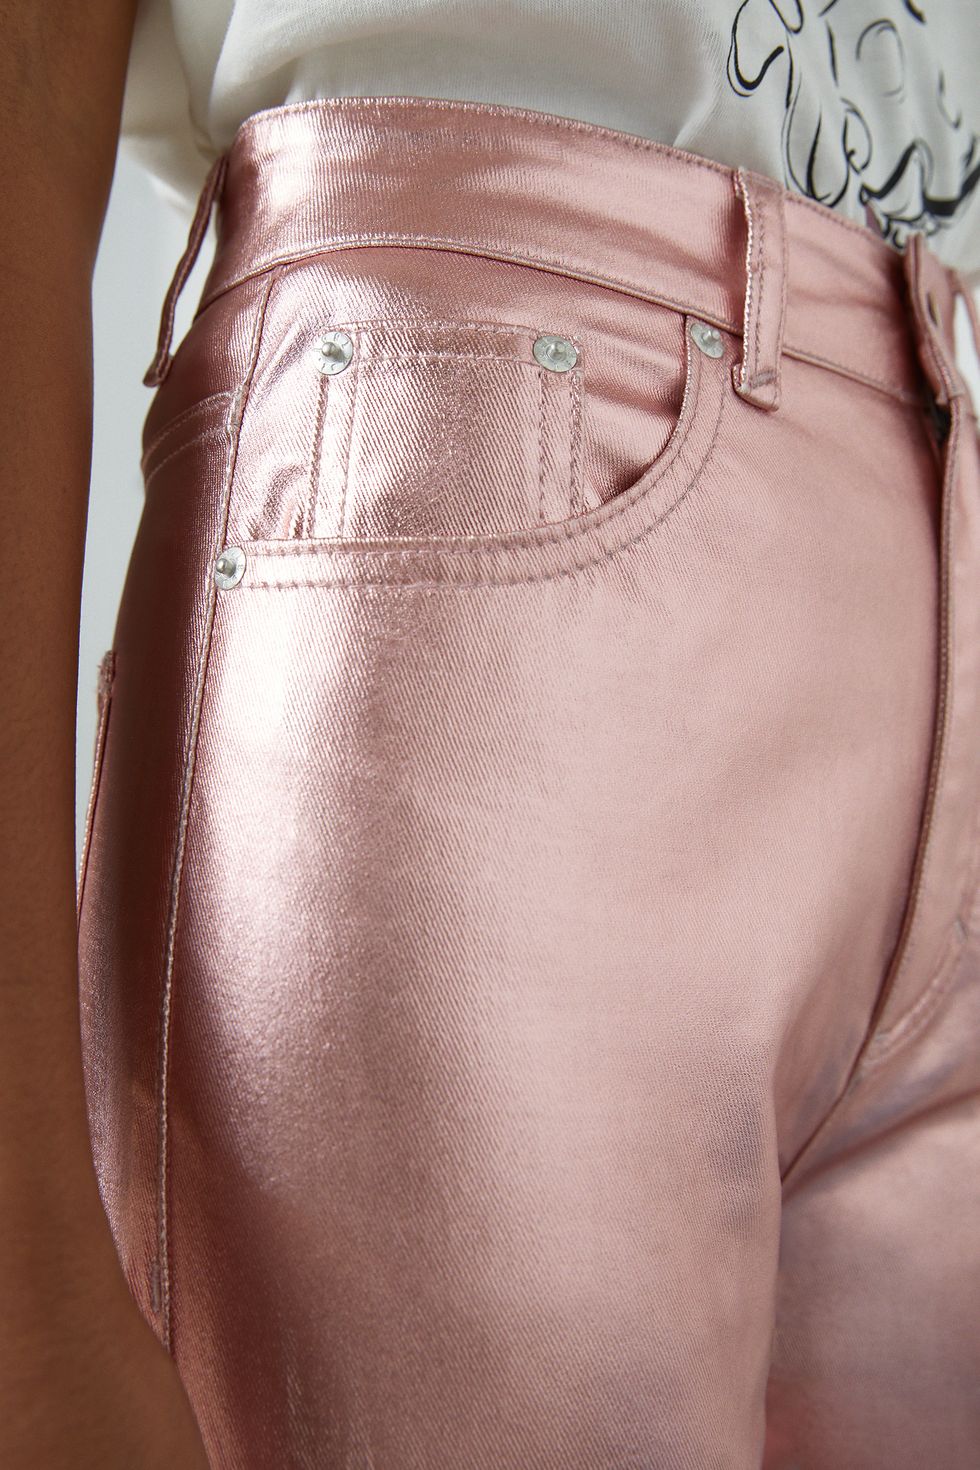 Pantalón metalizado rosa